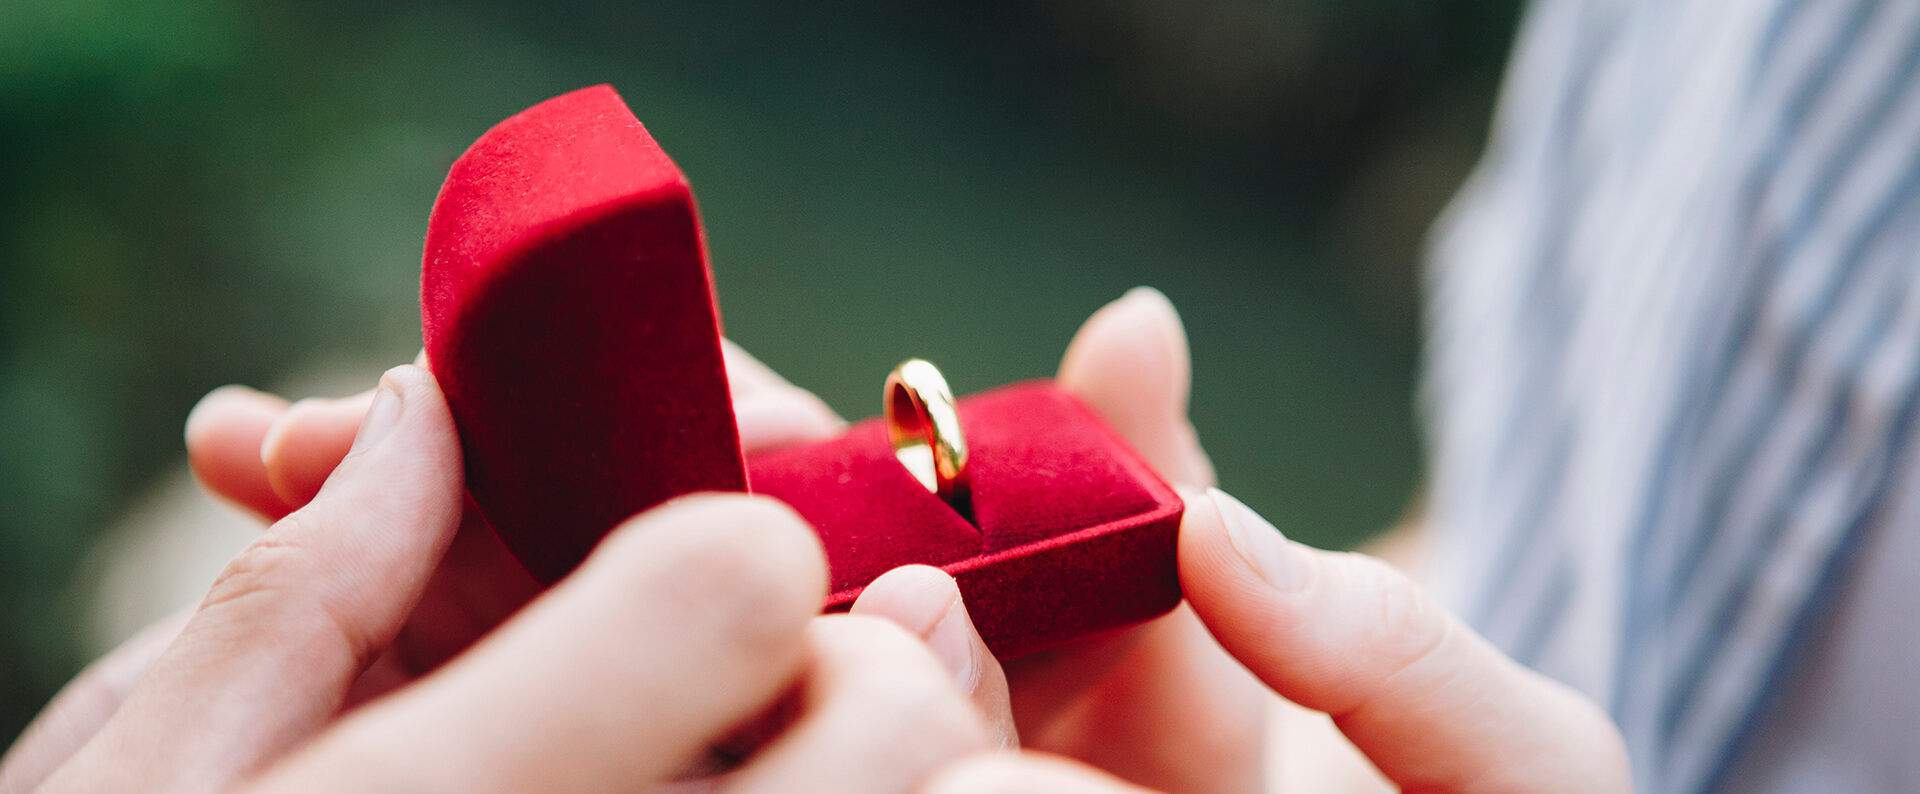 Gdzie kupić pierścionek zaręczynowy? | Blog o biżuterii by KINGY